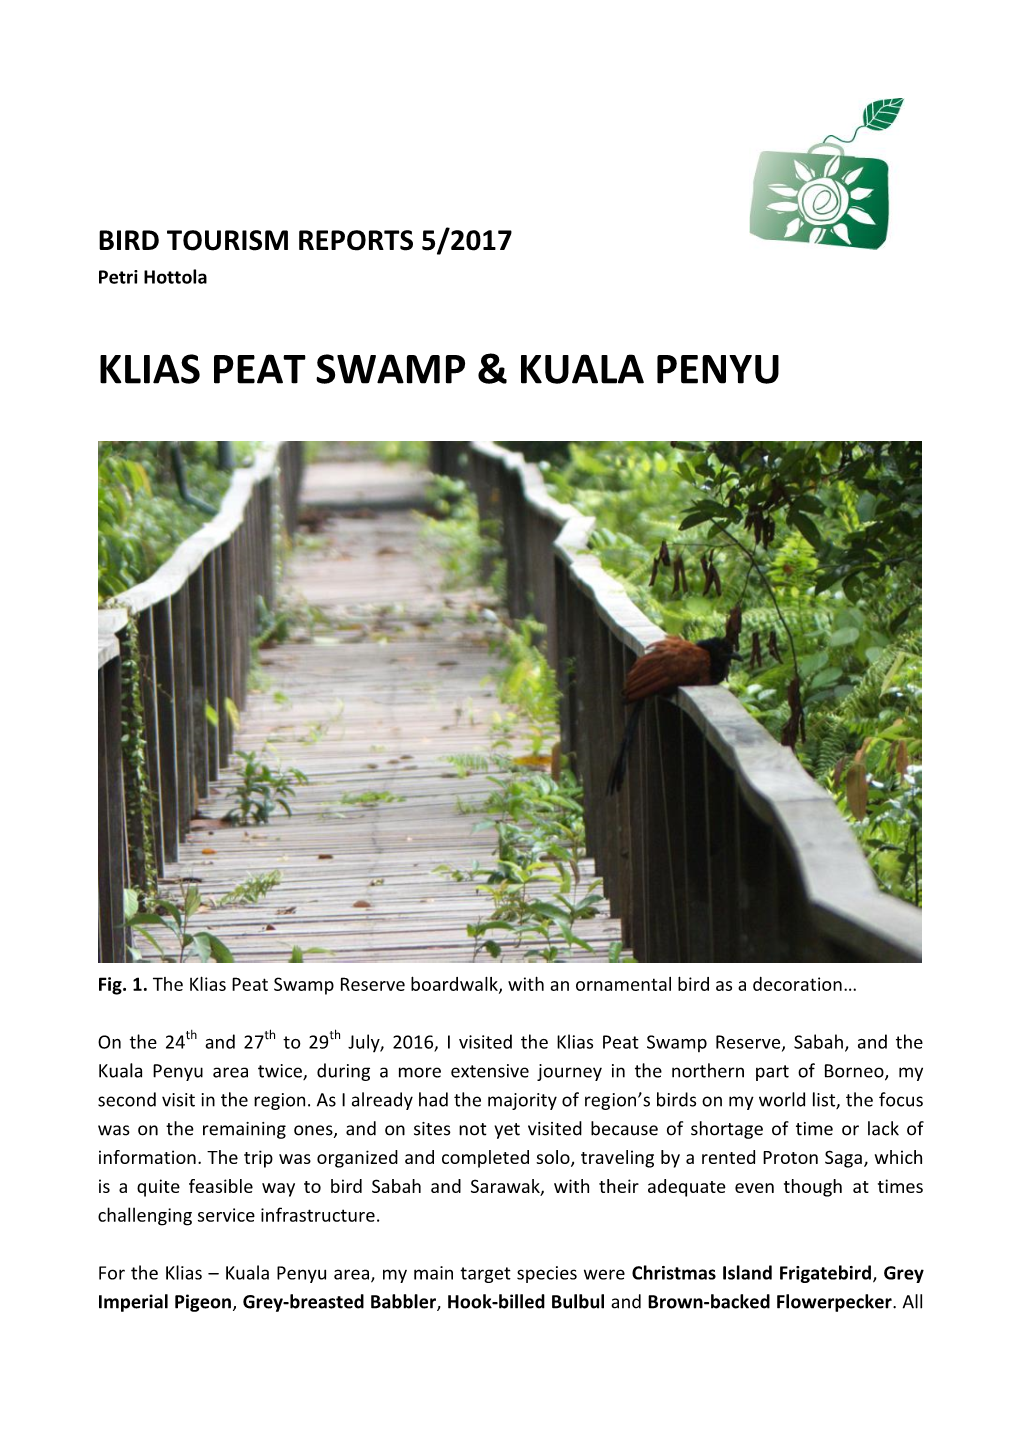 Klias Peat Swamp & Kuala Penyu